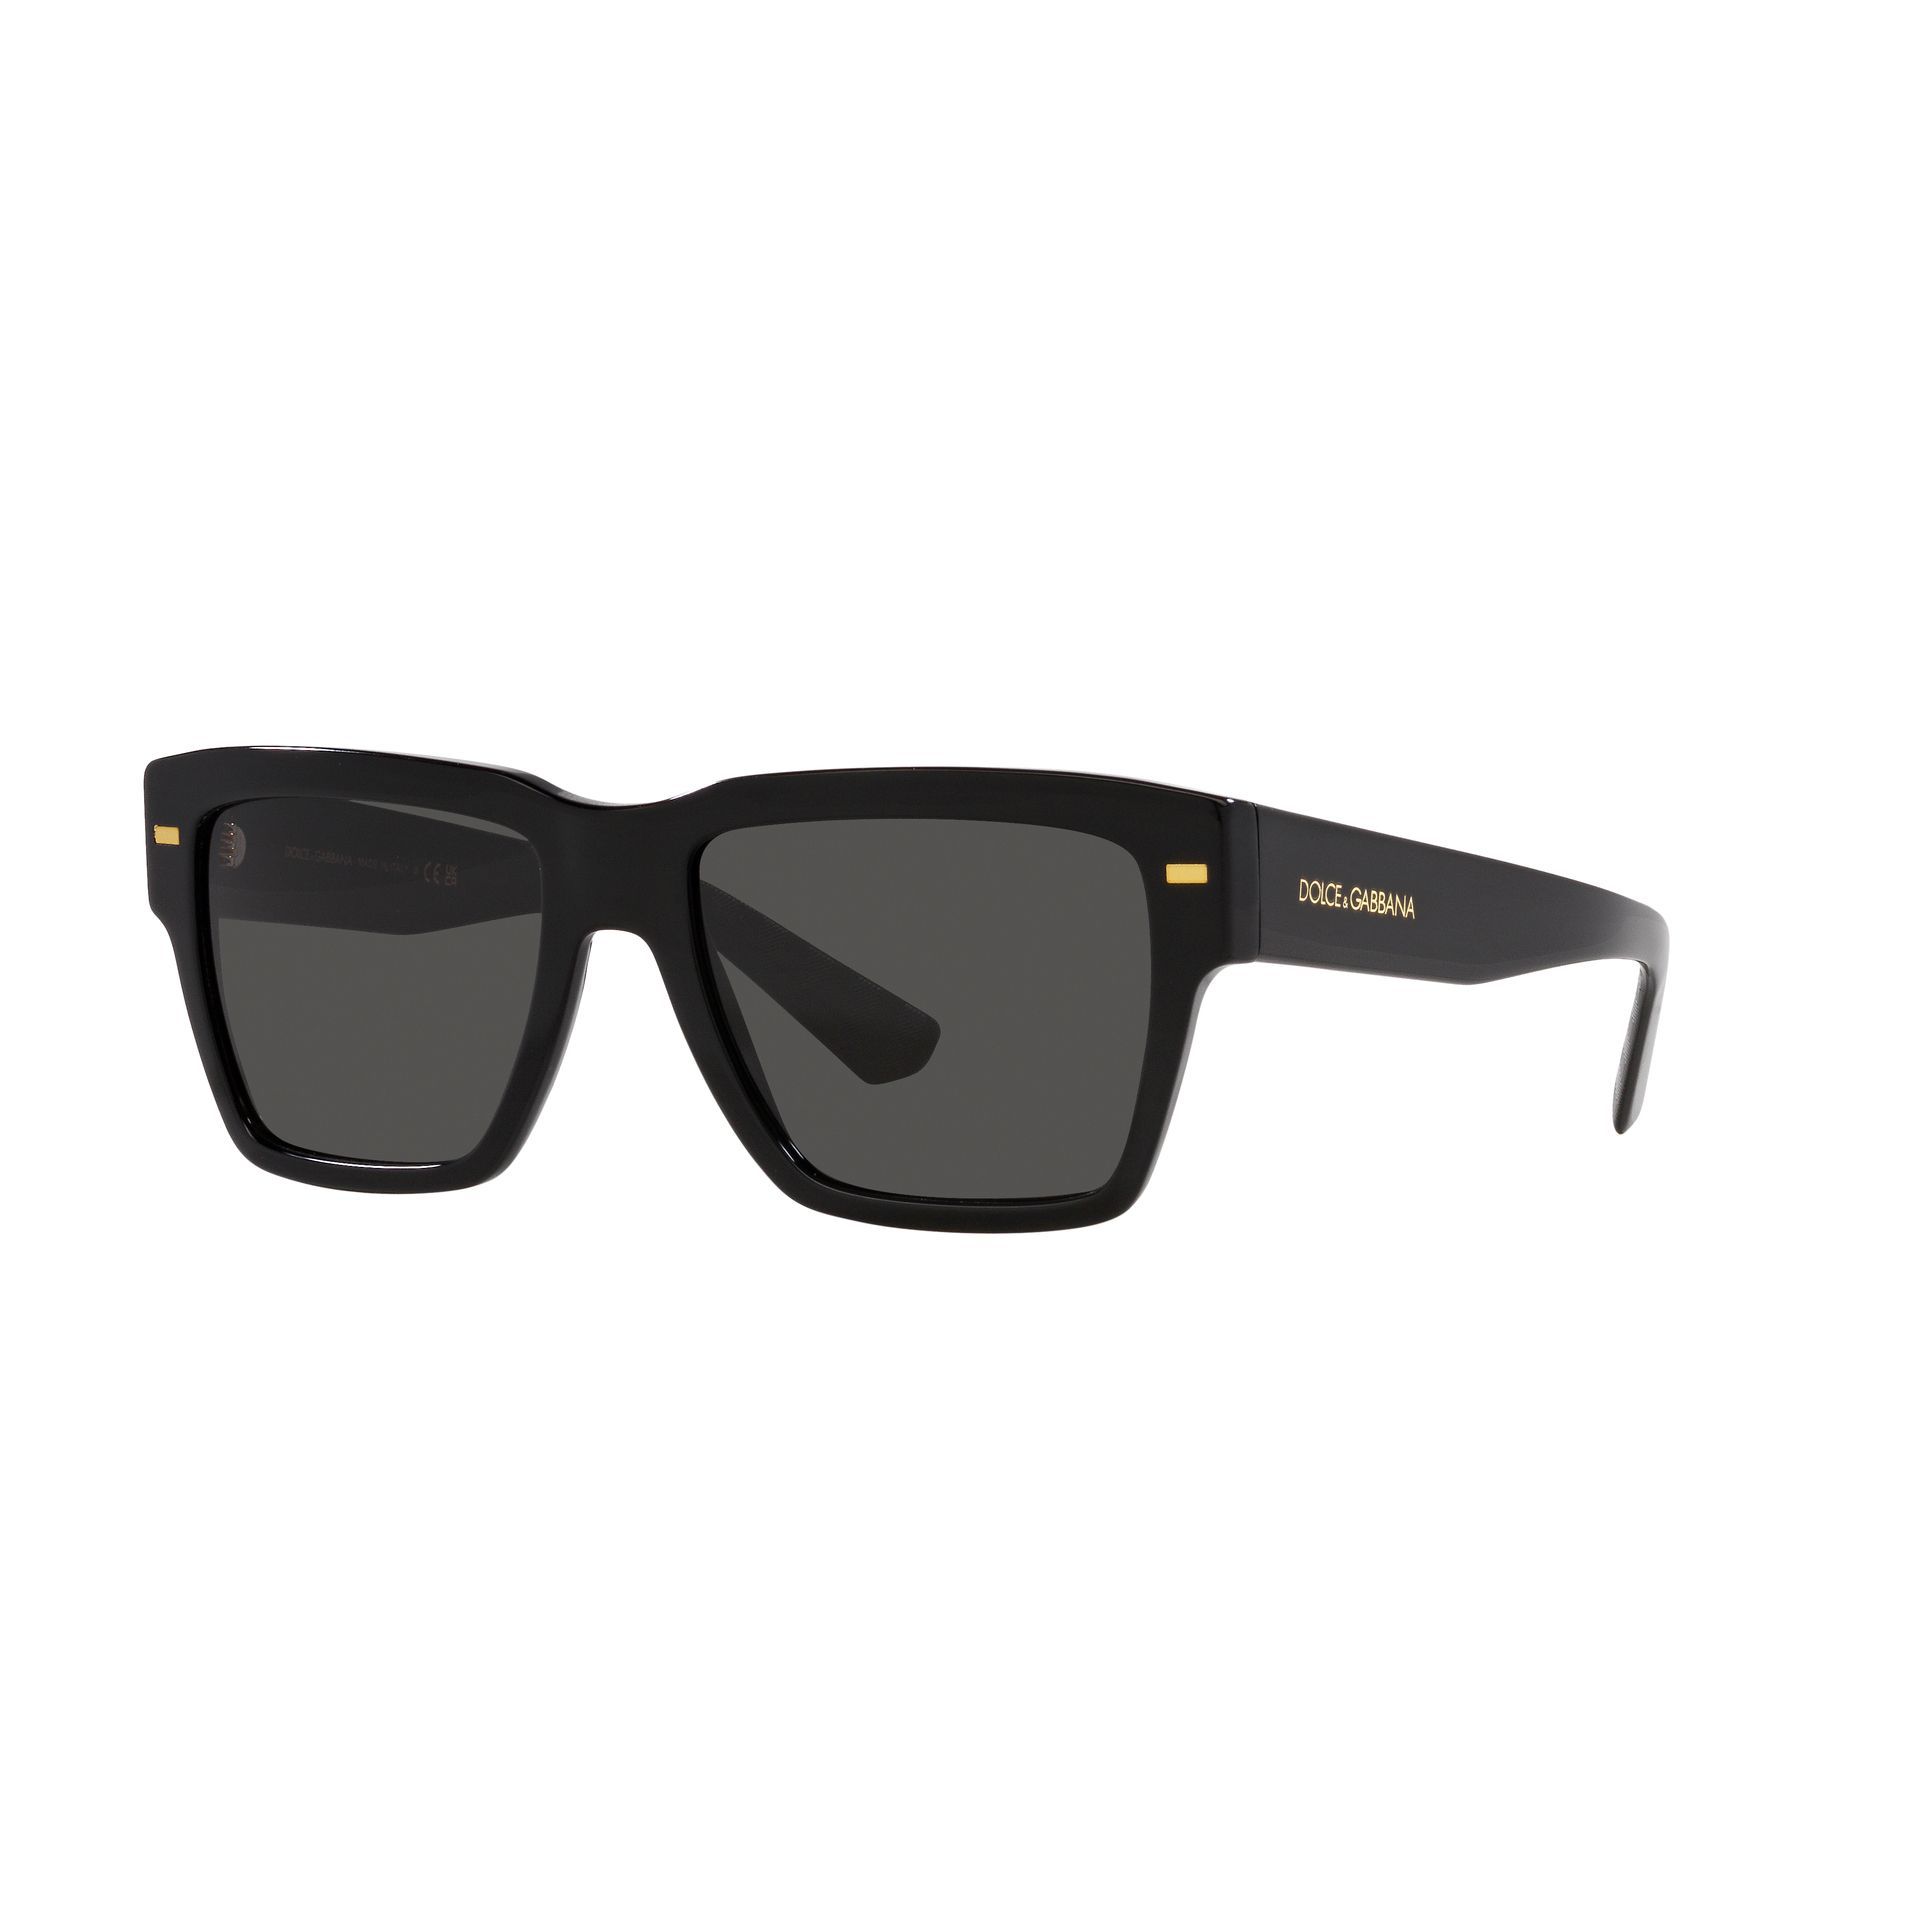 0DG2294 Pilot Sunglasses 01 87 - size 59